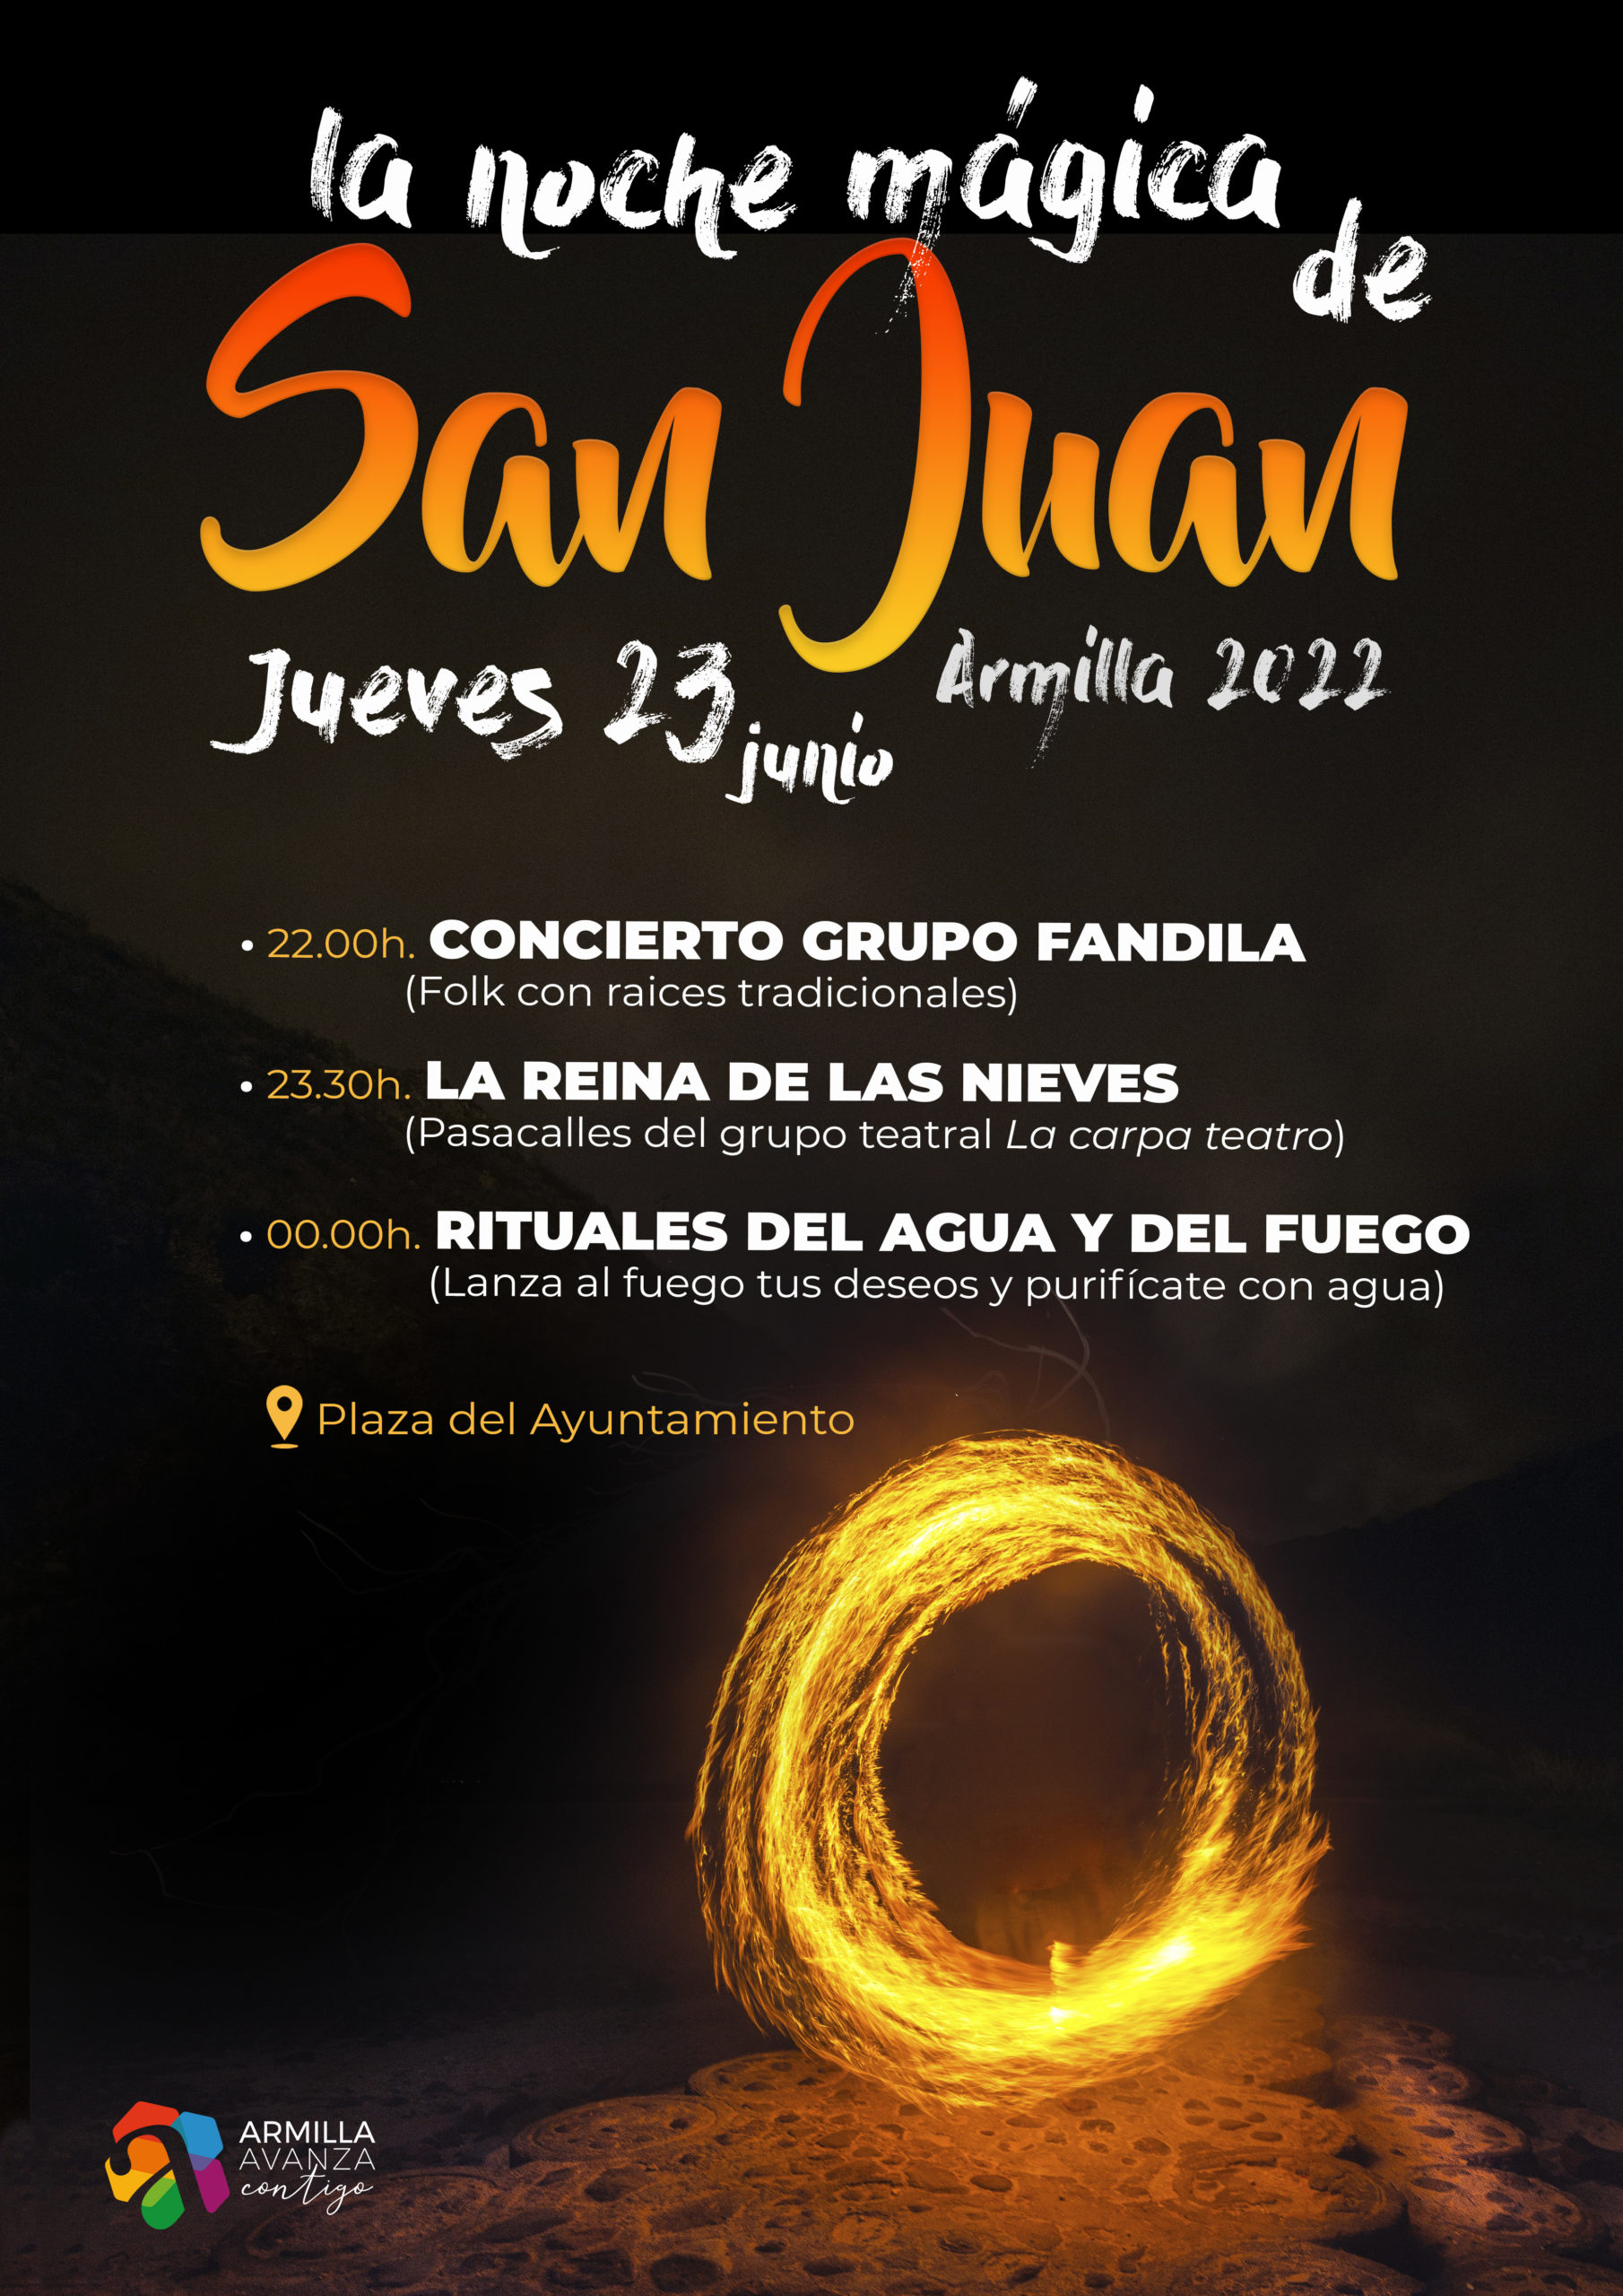 La noche mágica de San Juan”, 23 de junio, a partir de las diez de la noche horas en Plaza la | Ayuntamiento Armilla